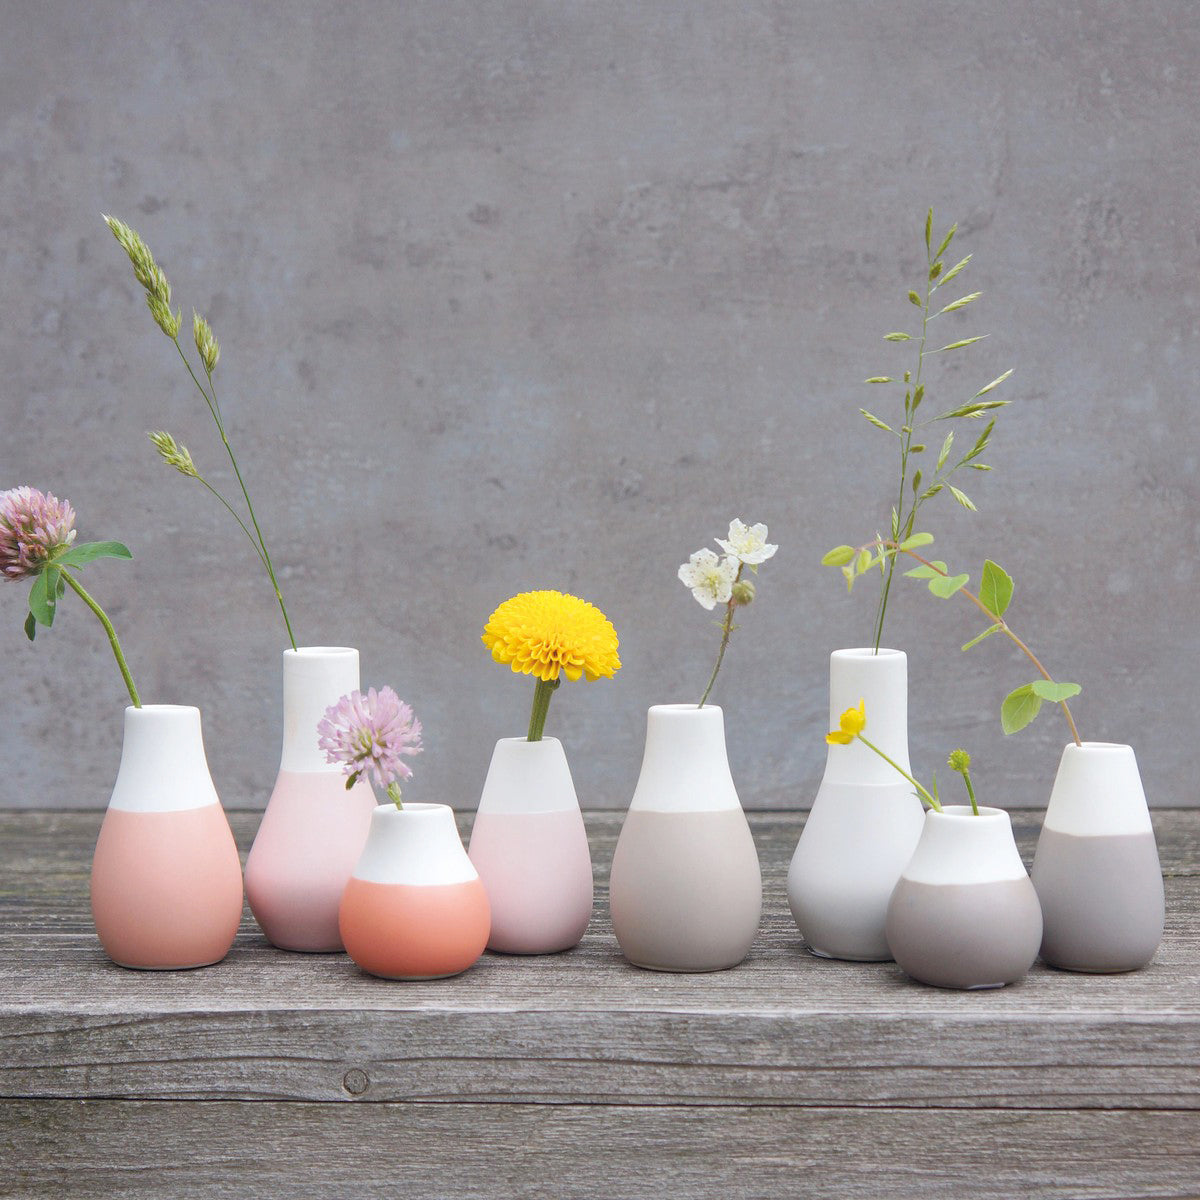 Rader瓷器小花瓶套裝 Rader Little Porcelain Vase Set